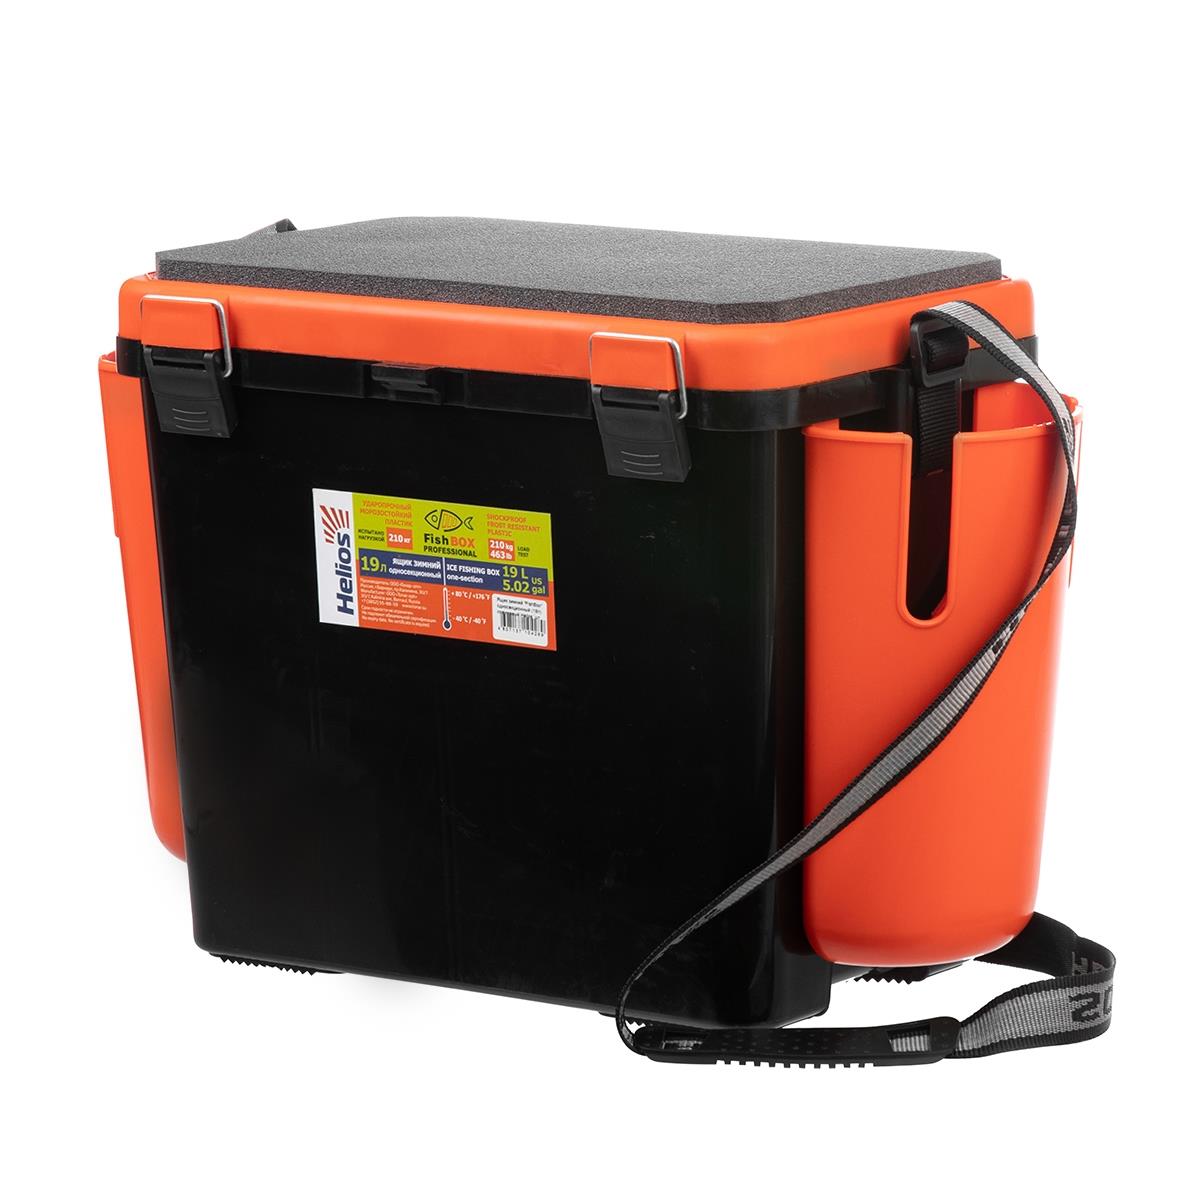 Ящик FishBox односекционный 19л оранжевый Helios сумка клатч на клапане оранжевый